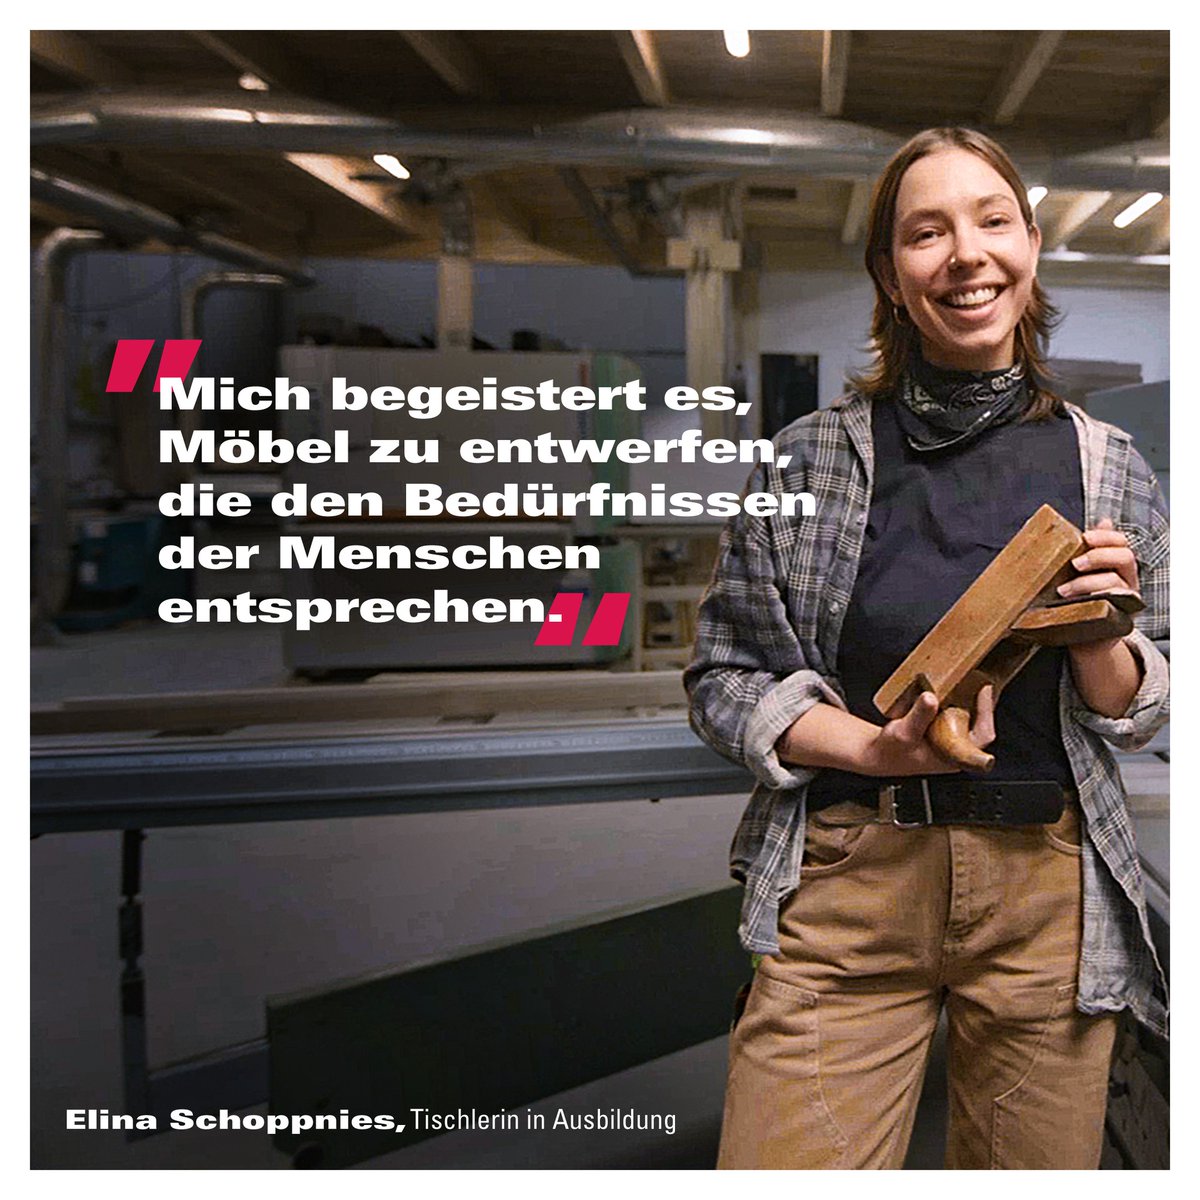 In ihrer Ausbildung zur Tischlerin kann Elina jeden Tag kreativ sein. Und mit tollen Möbeln Menschen glücklich machen. Für die 26-Jährige ein Traumjob, auf den sie sich jeden Morgen aufs Neue freut. Erfahre mehr auf handwerk.de/zeitzumachen
#zeitzumachen #tischlerin #tischler